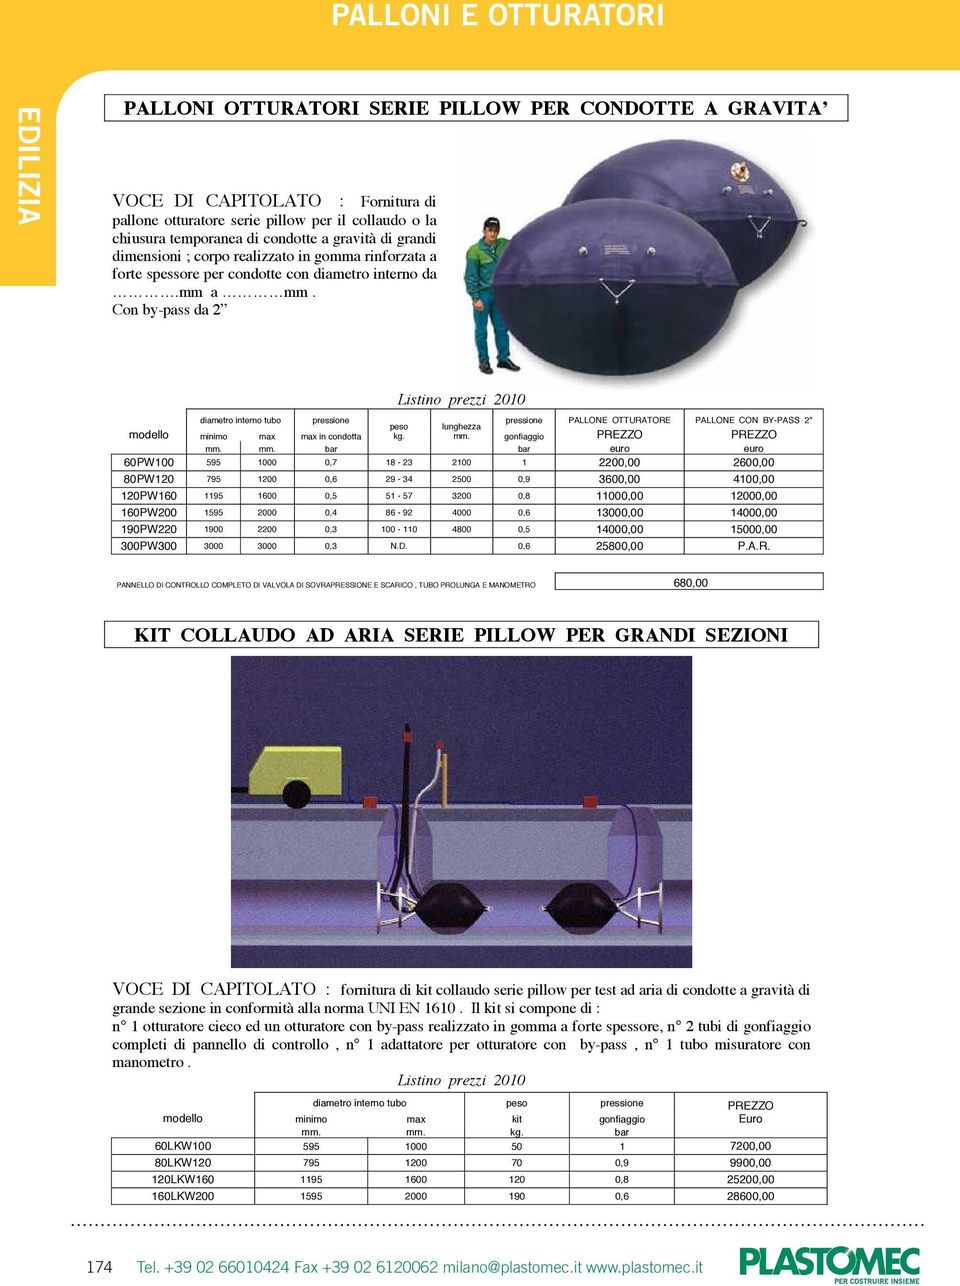 Con by-pass da 2 diametro interno tubo PALLONE OTTURATORE PALLONE CON BY-PASS 2" peso lunghezza modello minimo max max in condotta kg. mm.